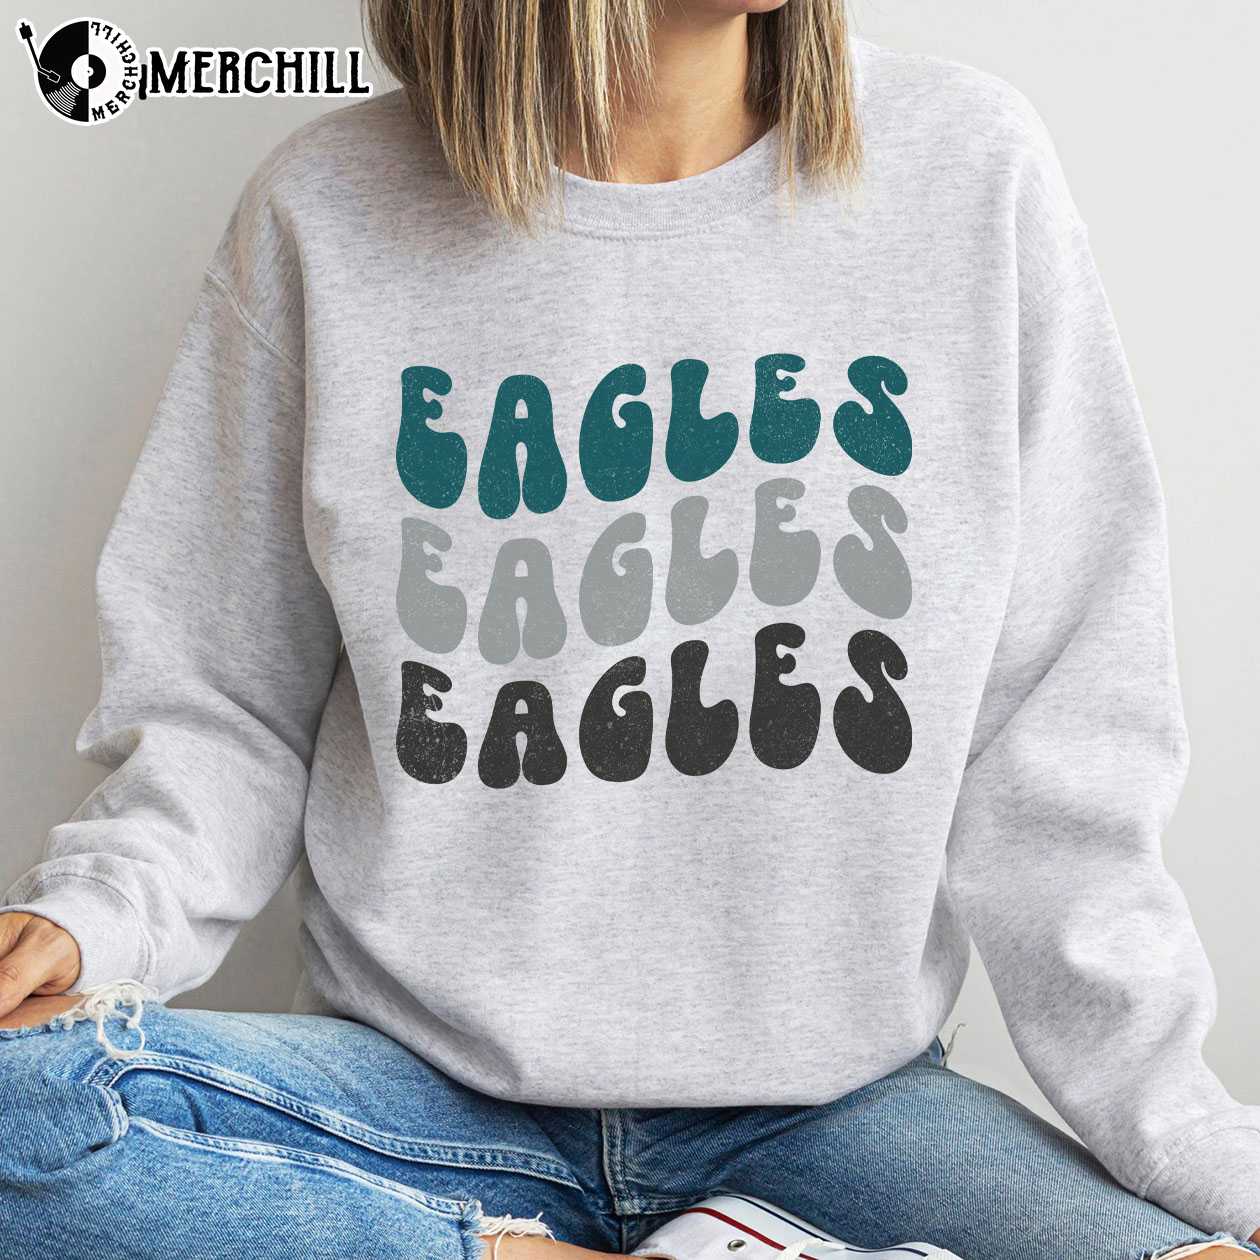 philadelphia eagles vintage sweatshirt